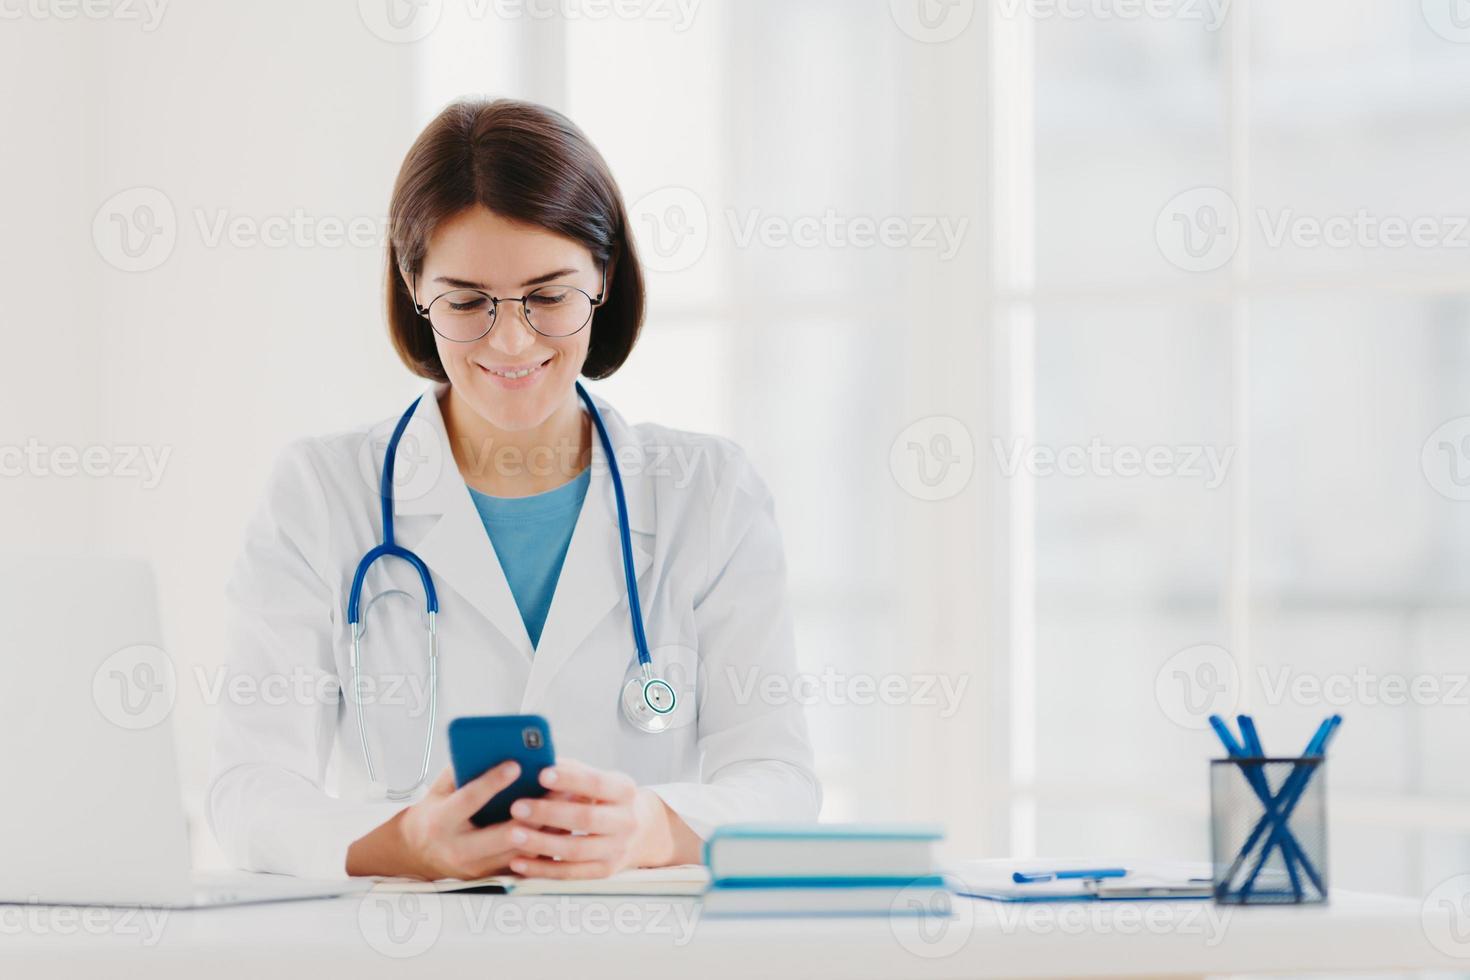 une travailleuse médicale utilise un smartphone, lit des conseils sur la façon de guérir la maladie sur Internet, pose dans un cabinet médical, porte un uniforme médical spécial, voit les résultats de l'examen pour le patient, examine le tableau photo